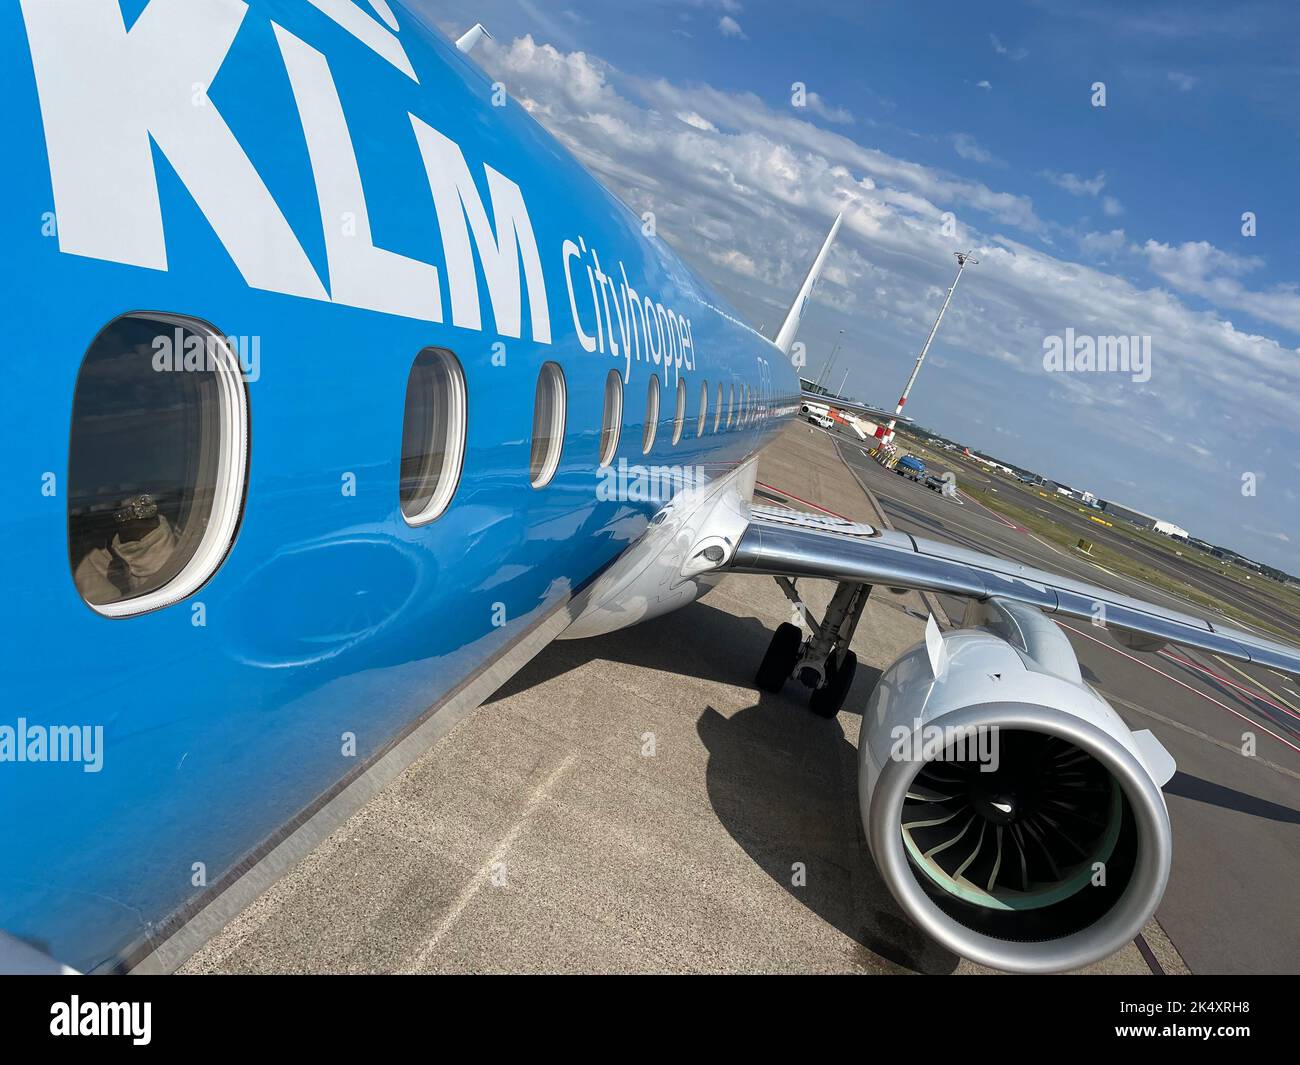 KLM Stockfoto